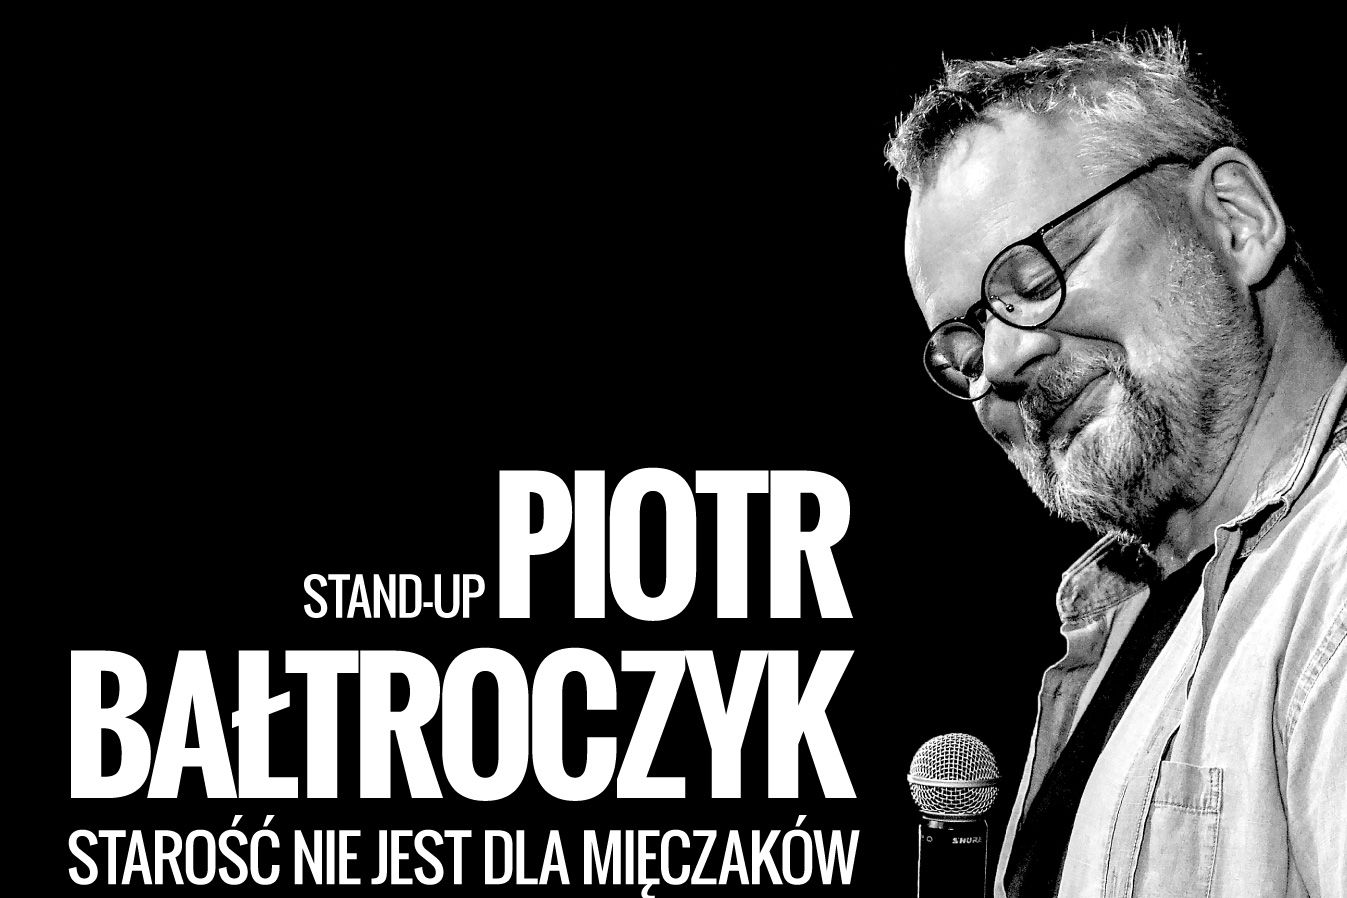 Piotr Bałtroczyk stand-up